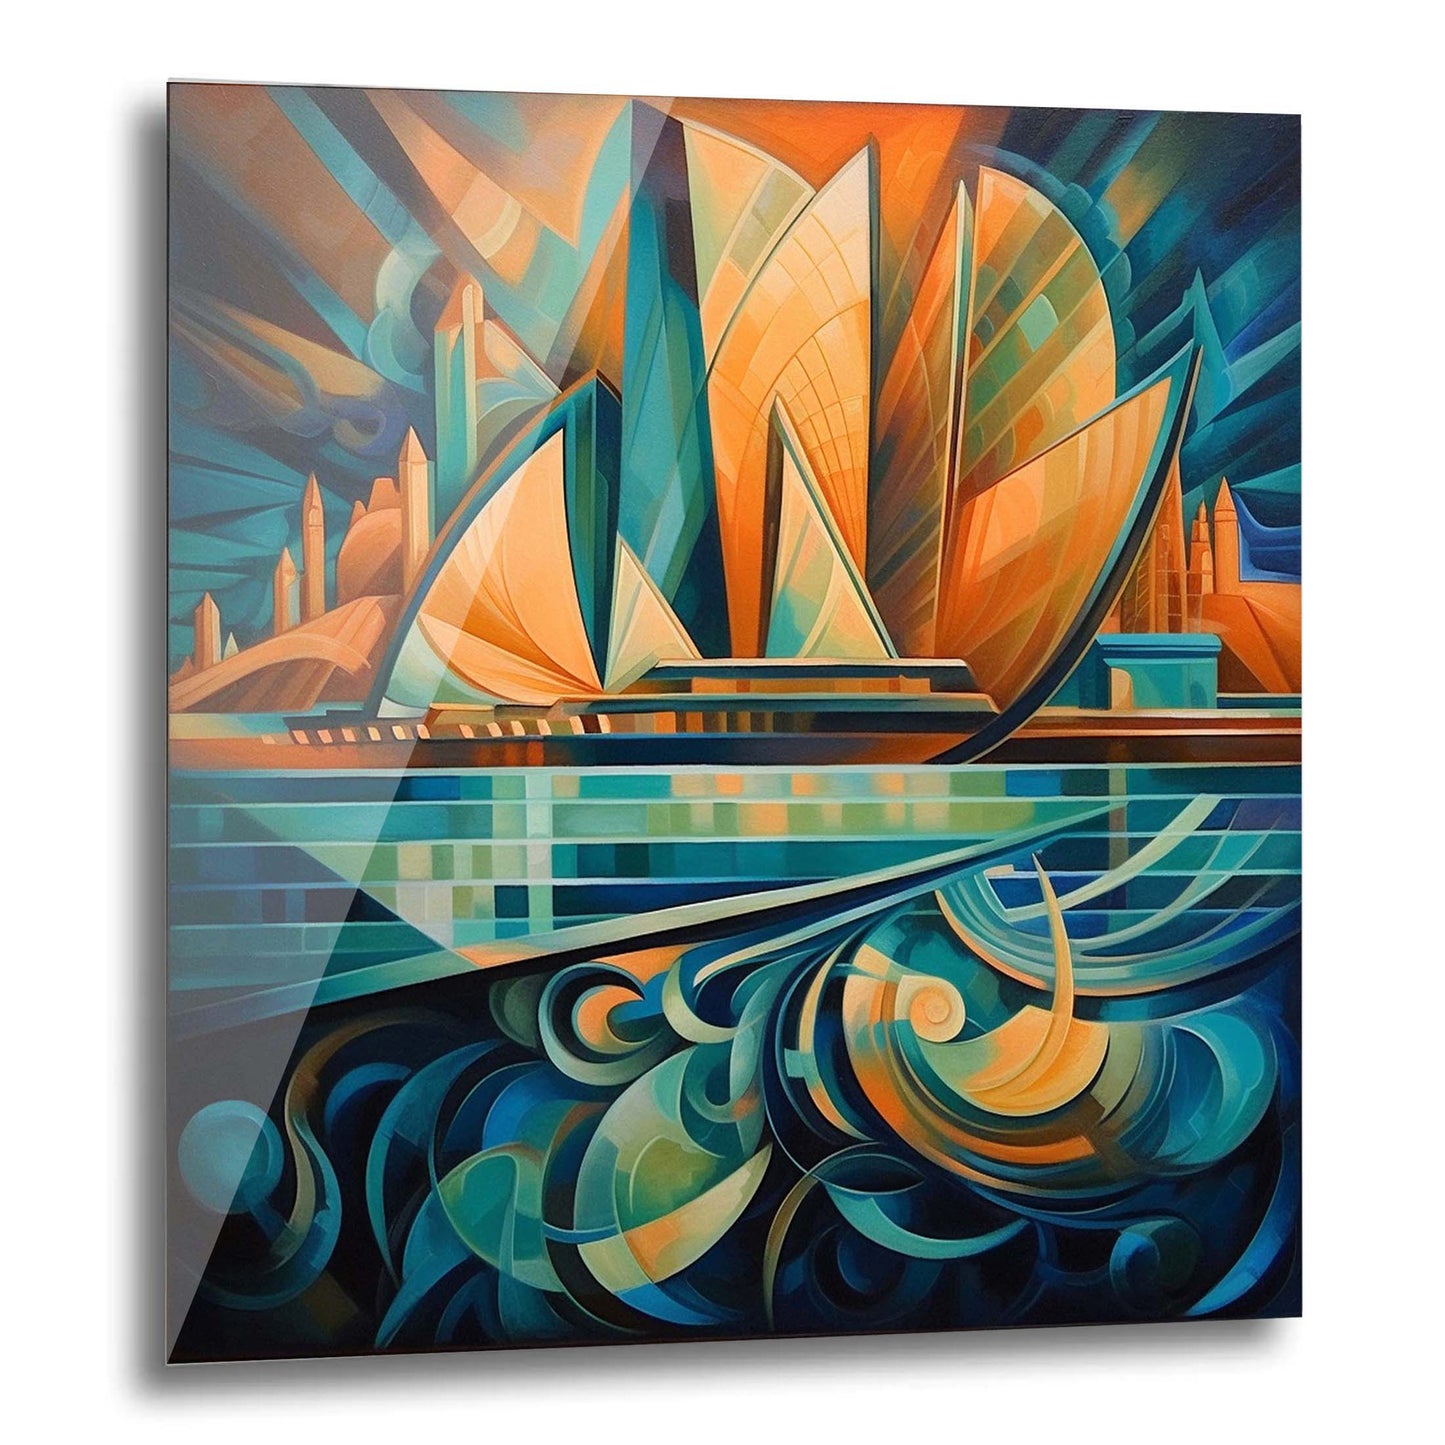 Sydney - Opera House - peinture murale dans le style du futurisme